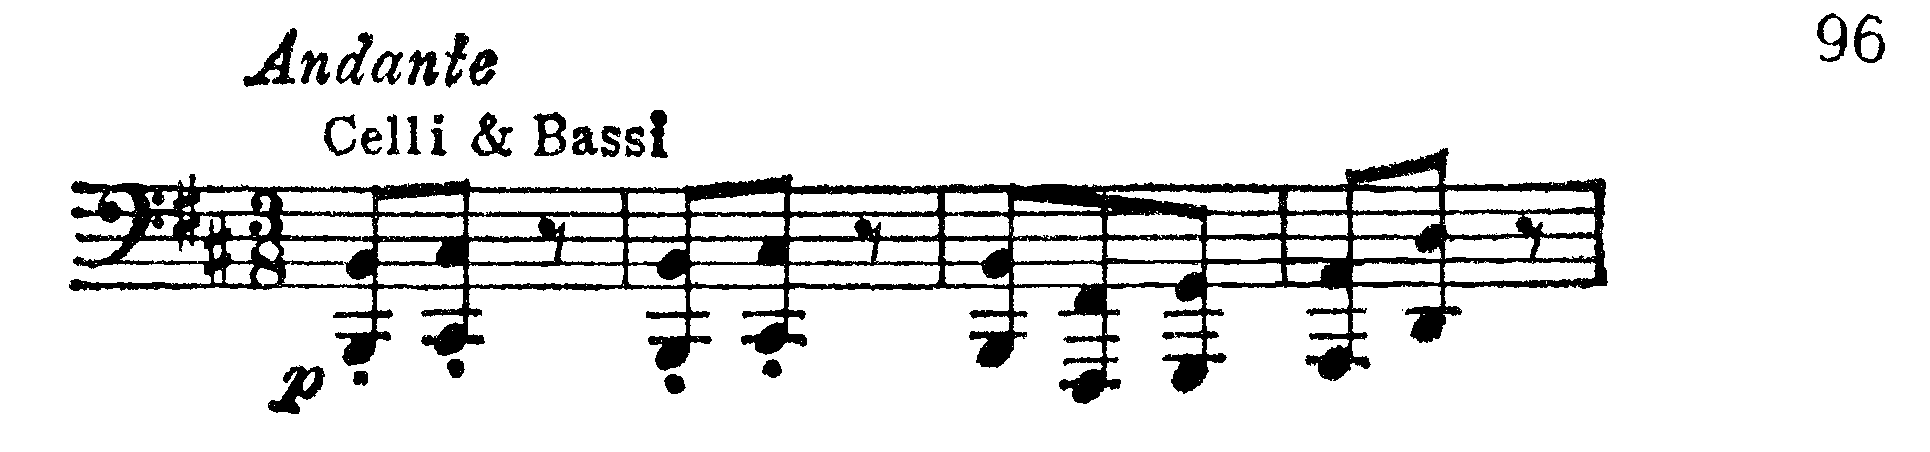 Symfoni, ex 96